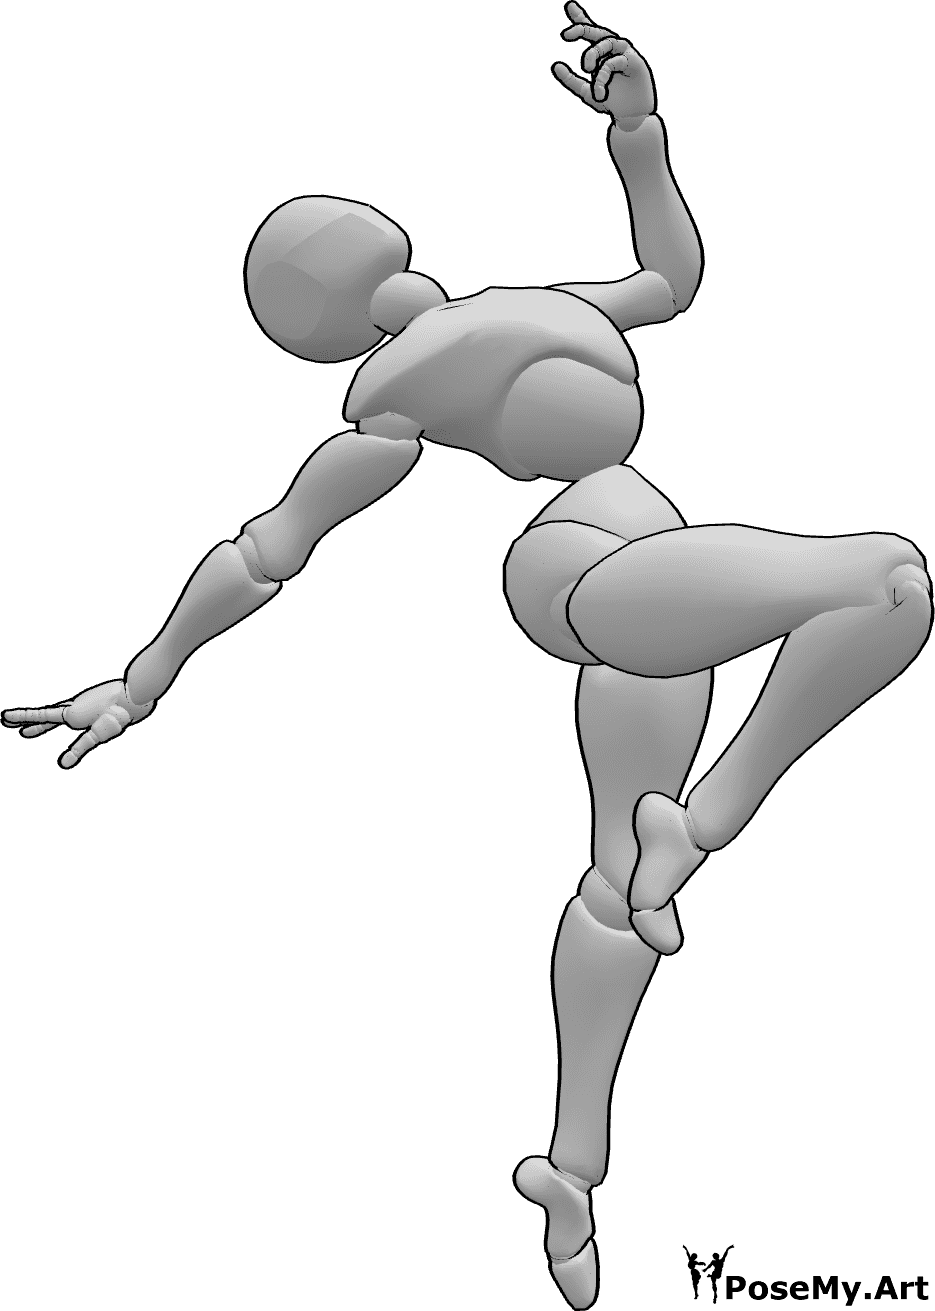 Posen-Referenz- Ästhetische akrobatische Sprungpose - Ästhetischer akrobatischer Sprung in der Luft Pose